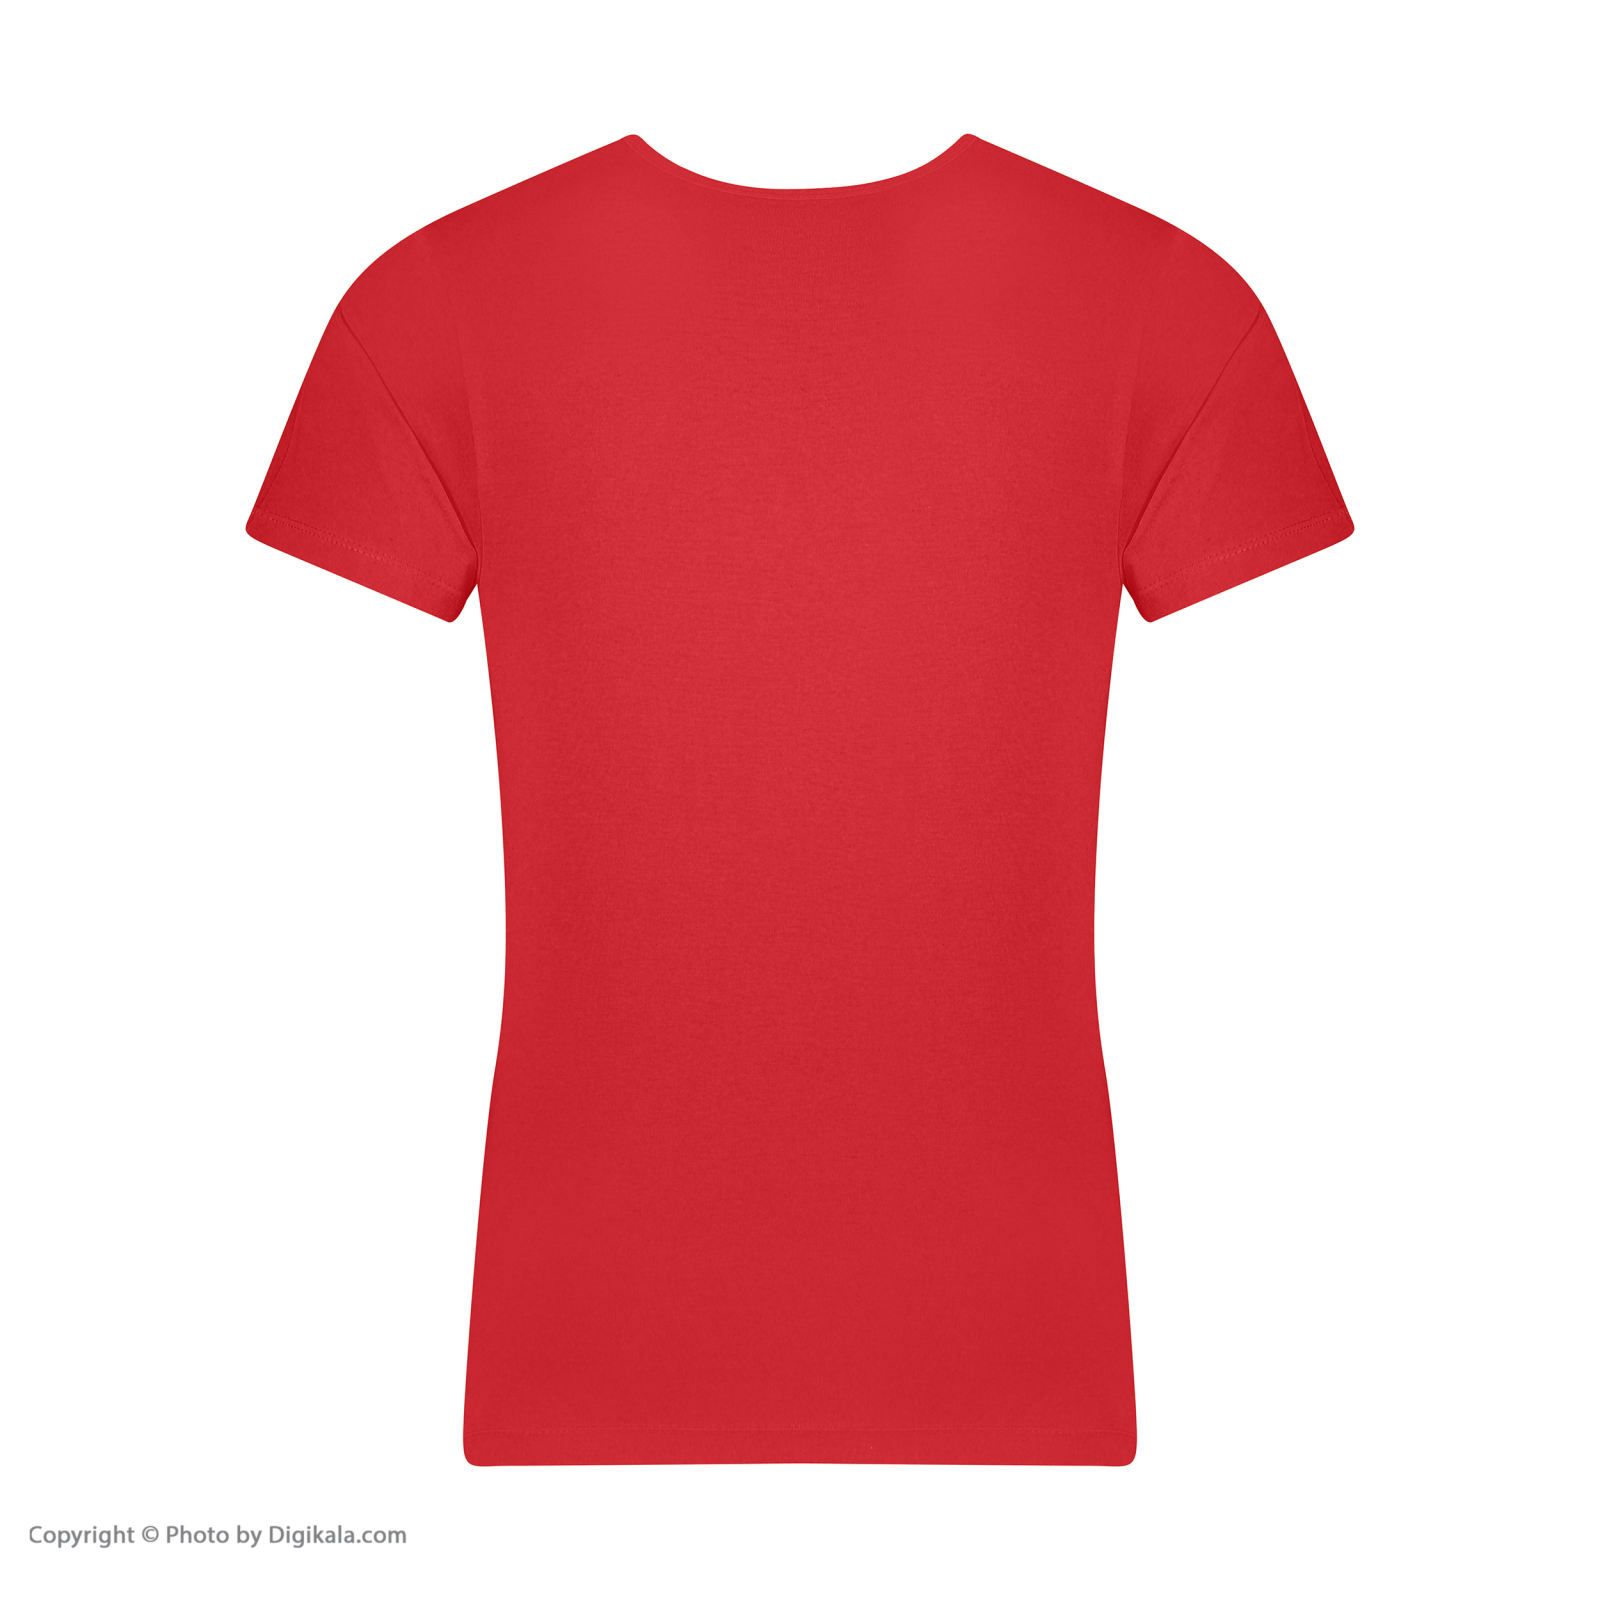 زیرپوش آستین دار مردانه برهان تن پوش مدل 2-02  رنگ قرمز بسته 4 عددی -  - 5